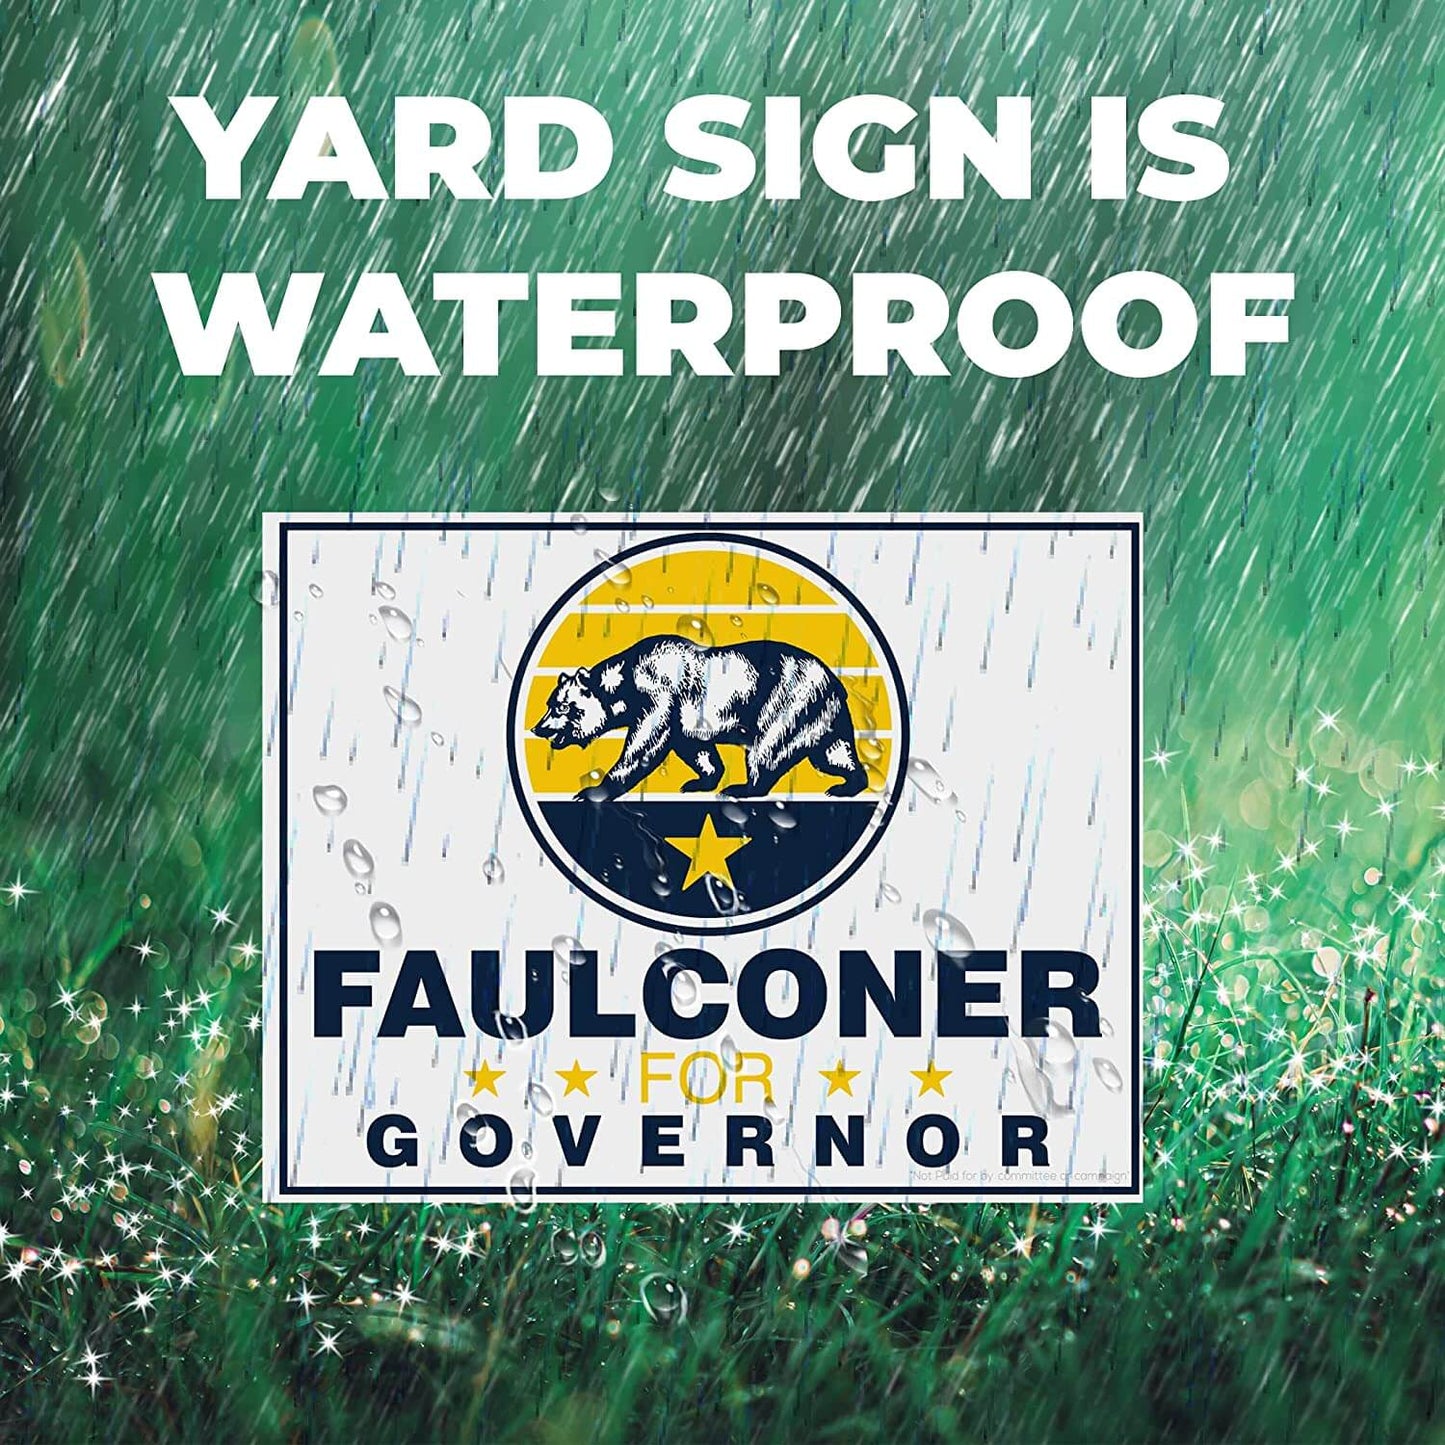 waterproof faulconer yard sign